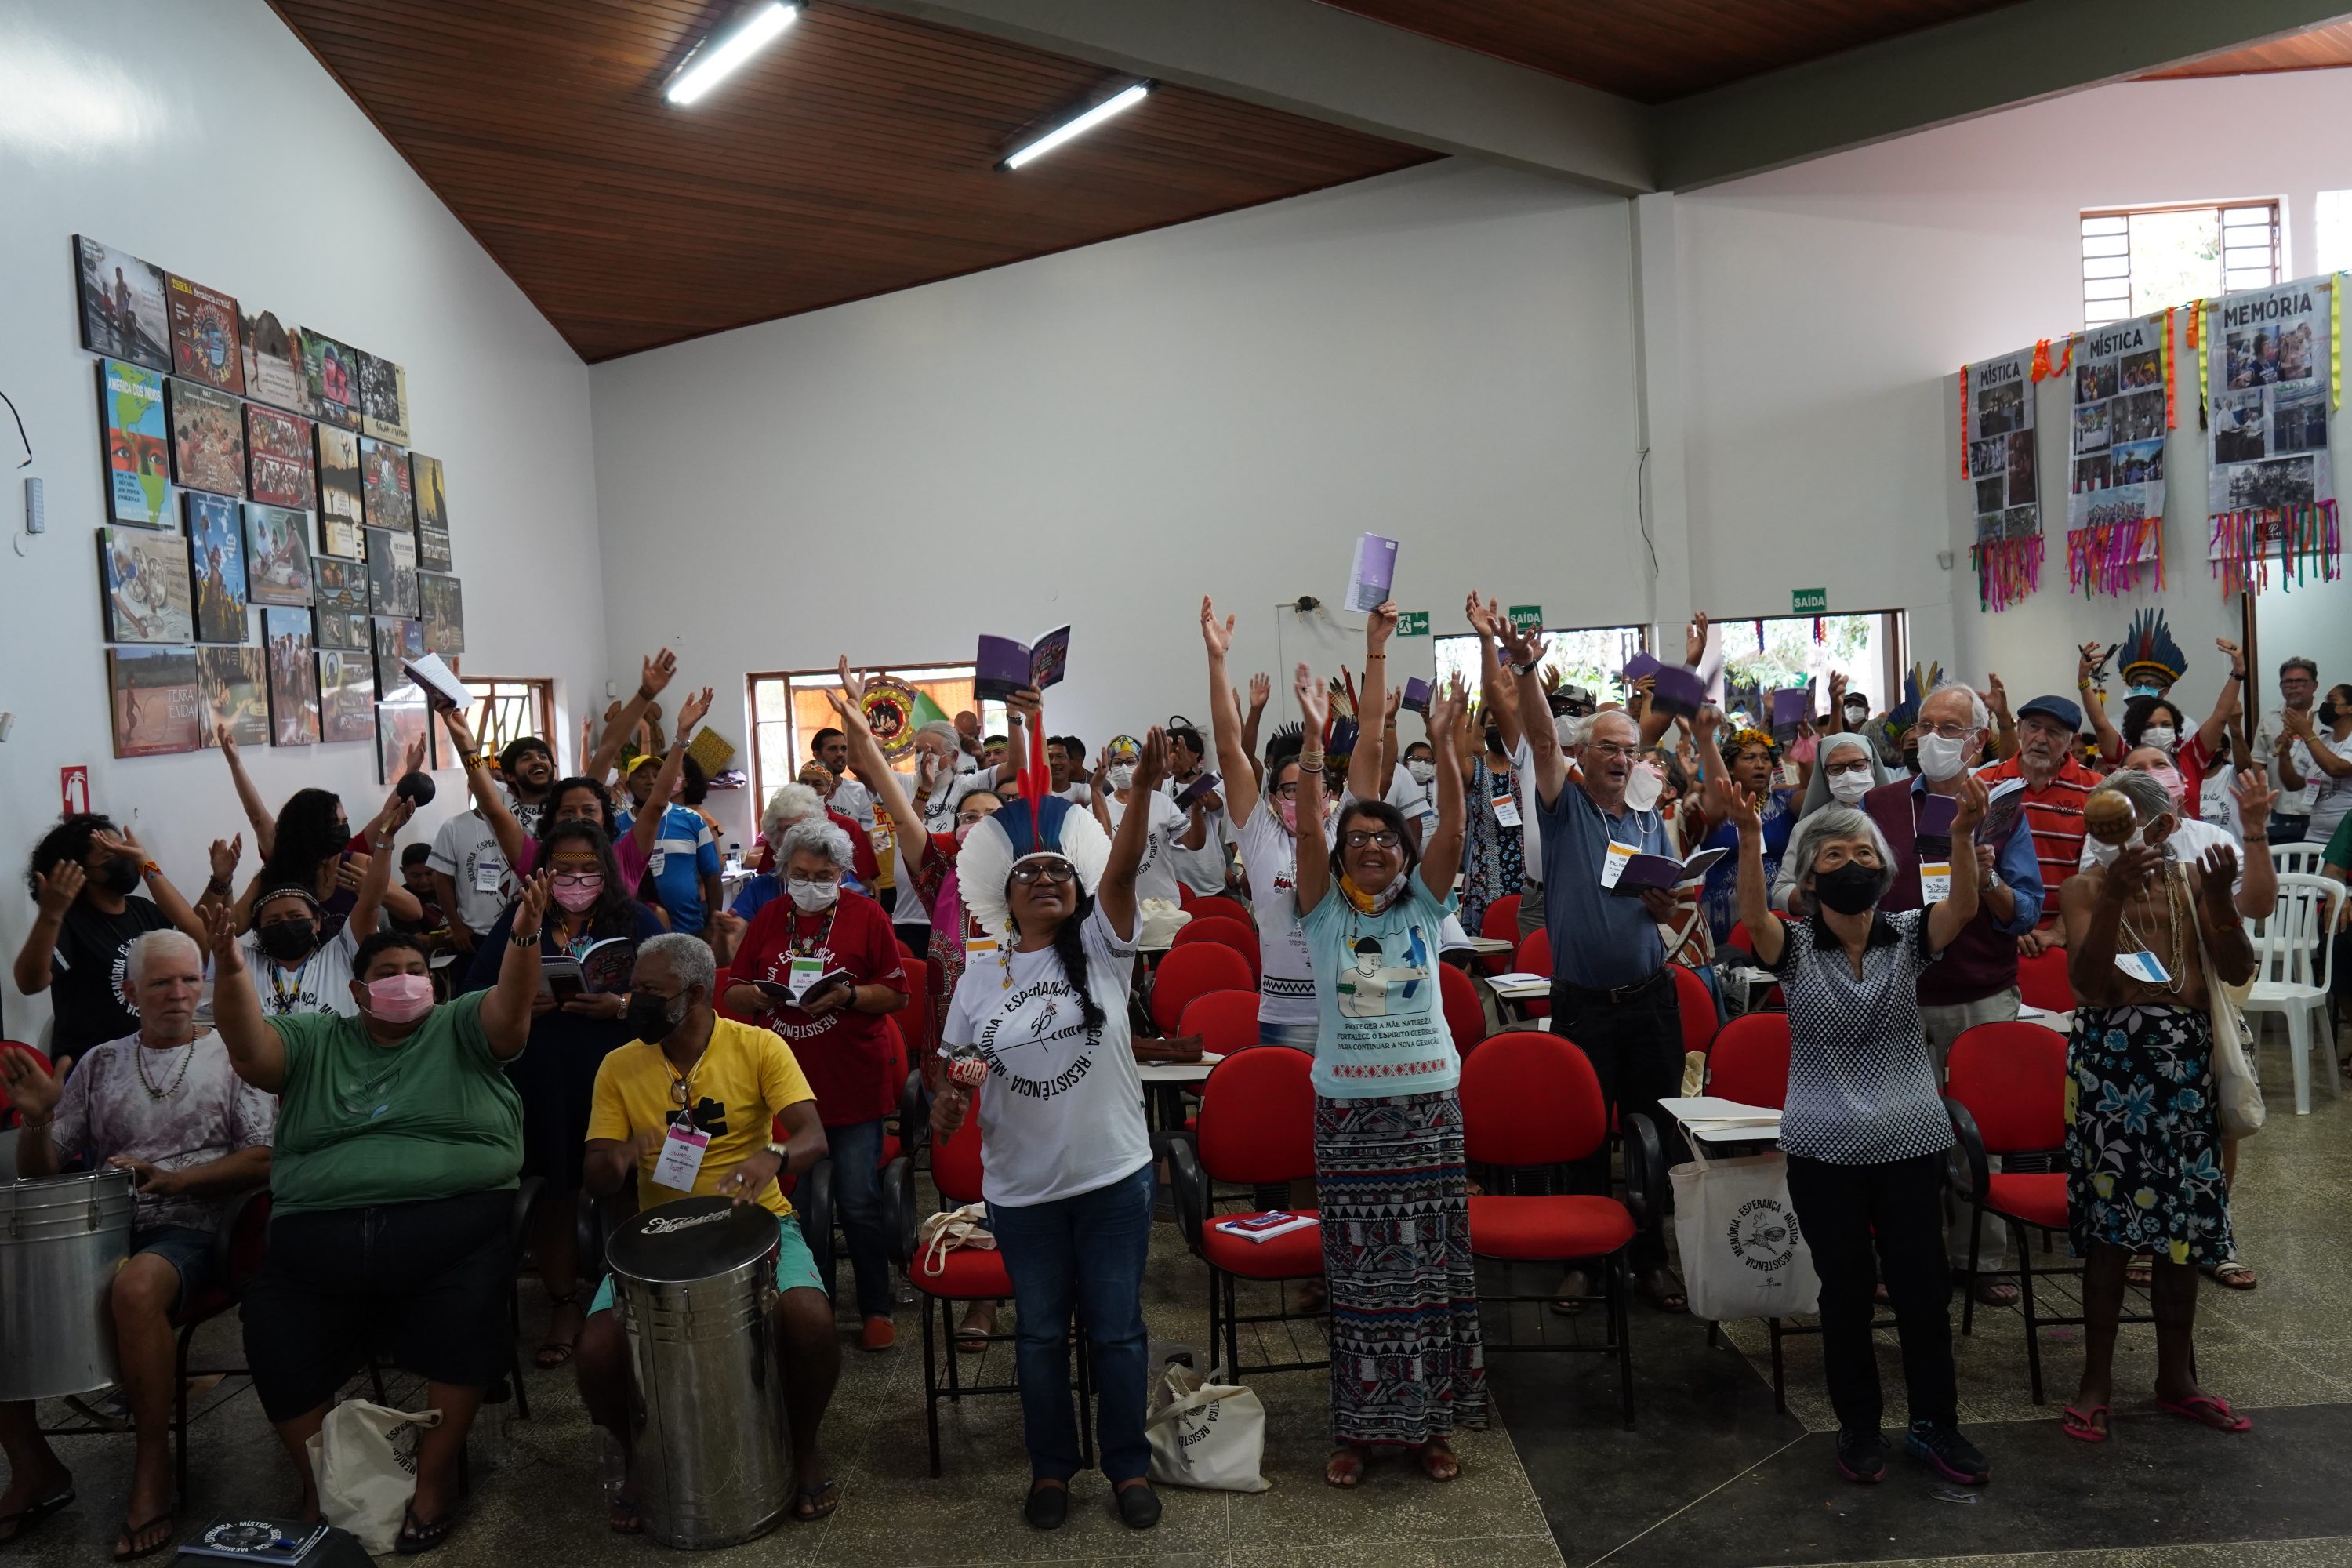 Congresso 50 anos do Cimi: sentimento de esperança fortalece missionários e lideranças indígenas para continuar caminhada